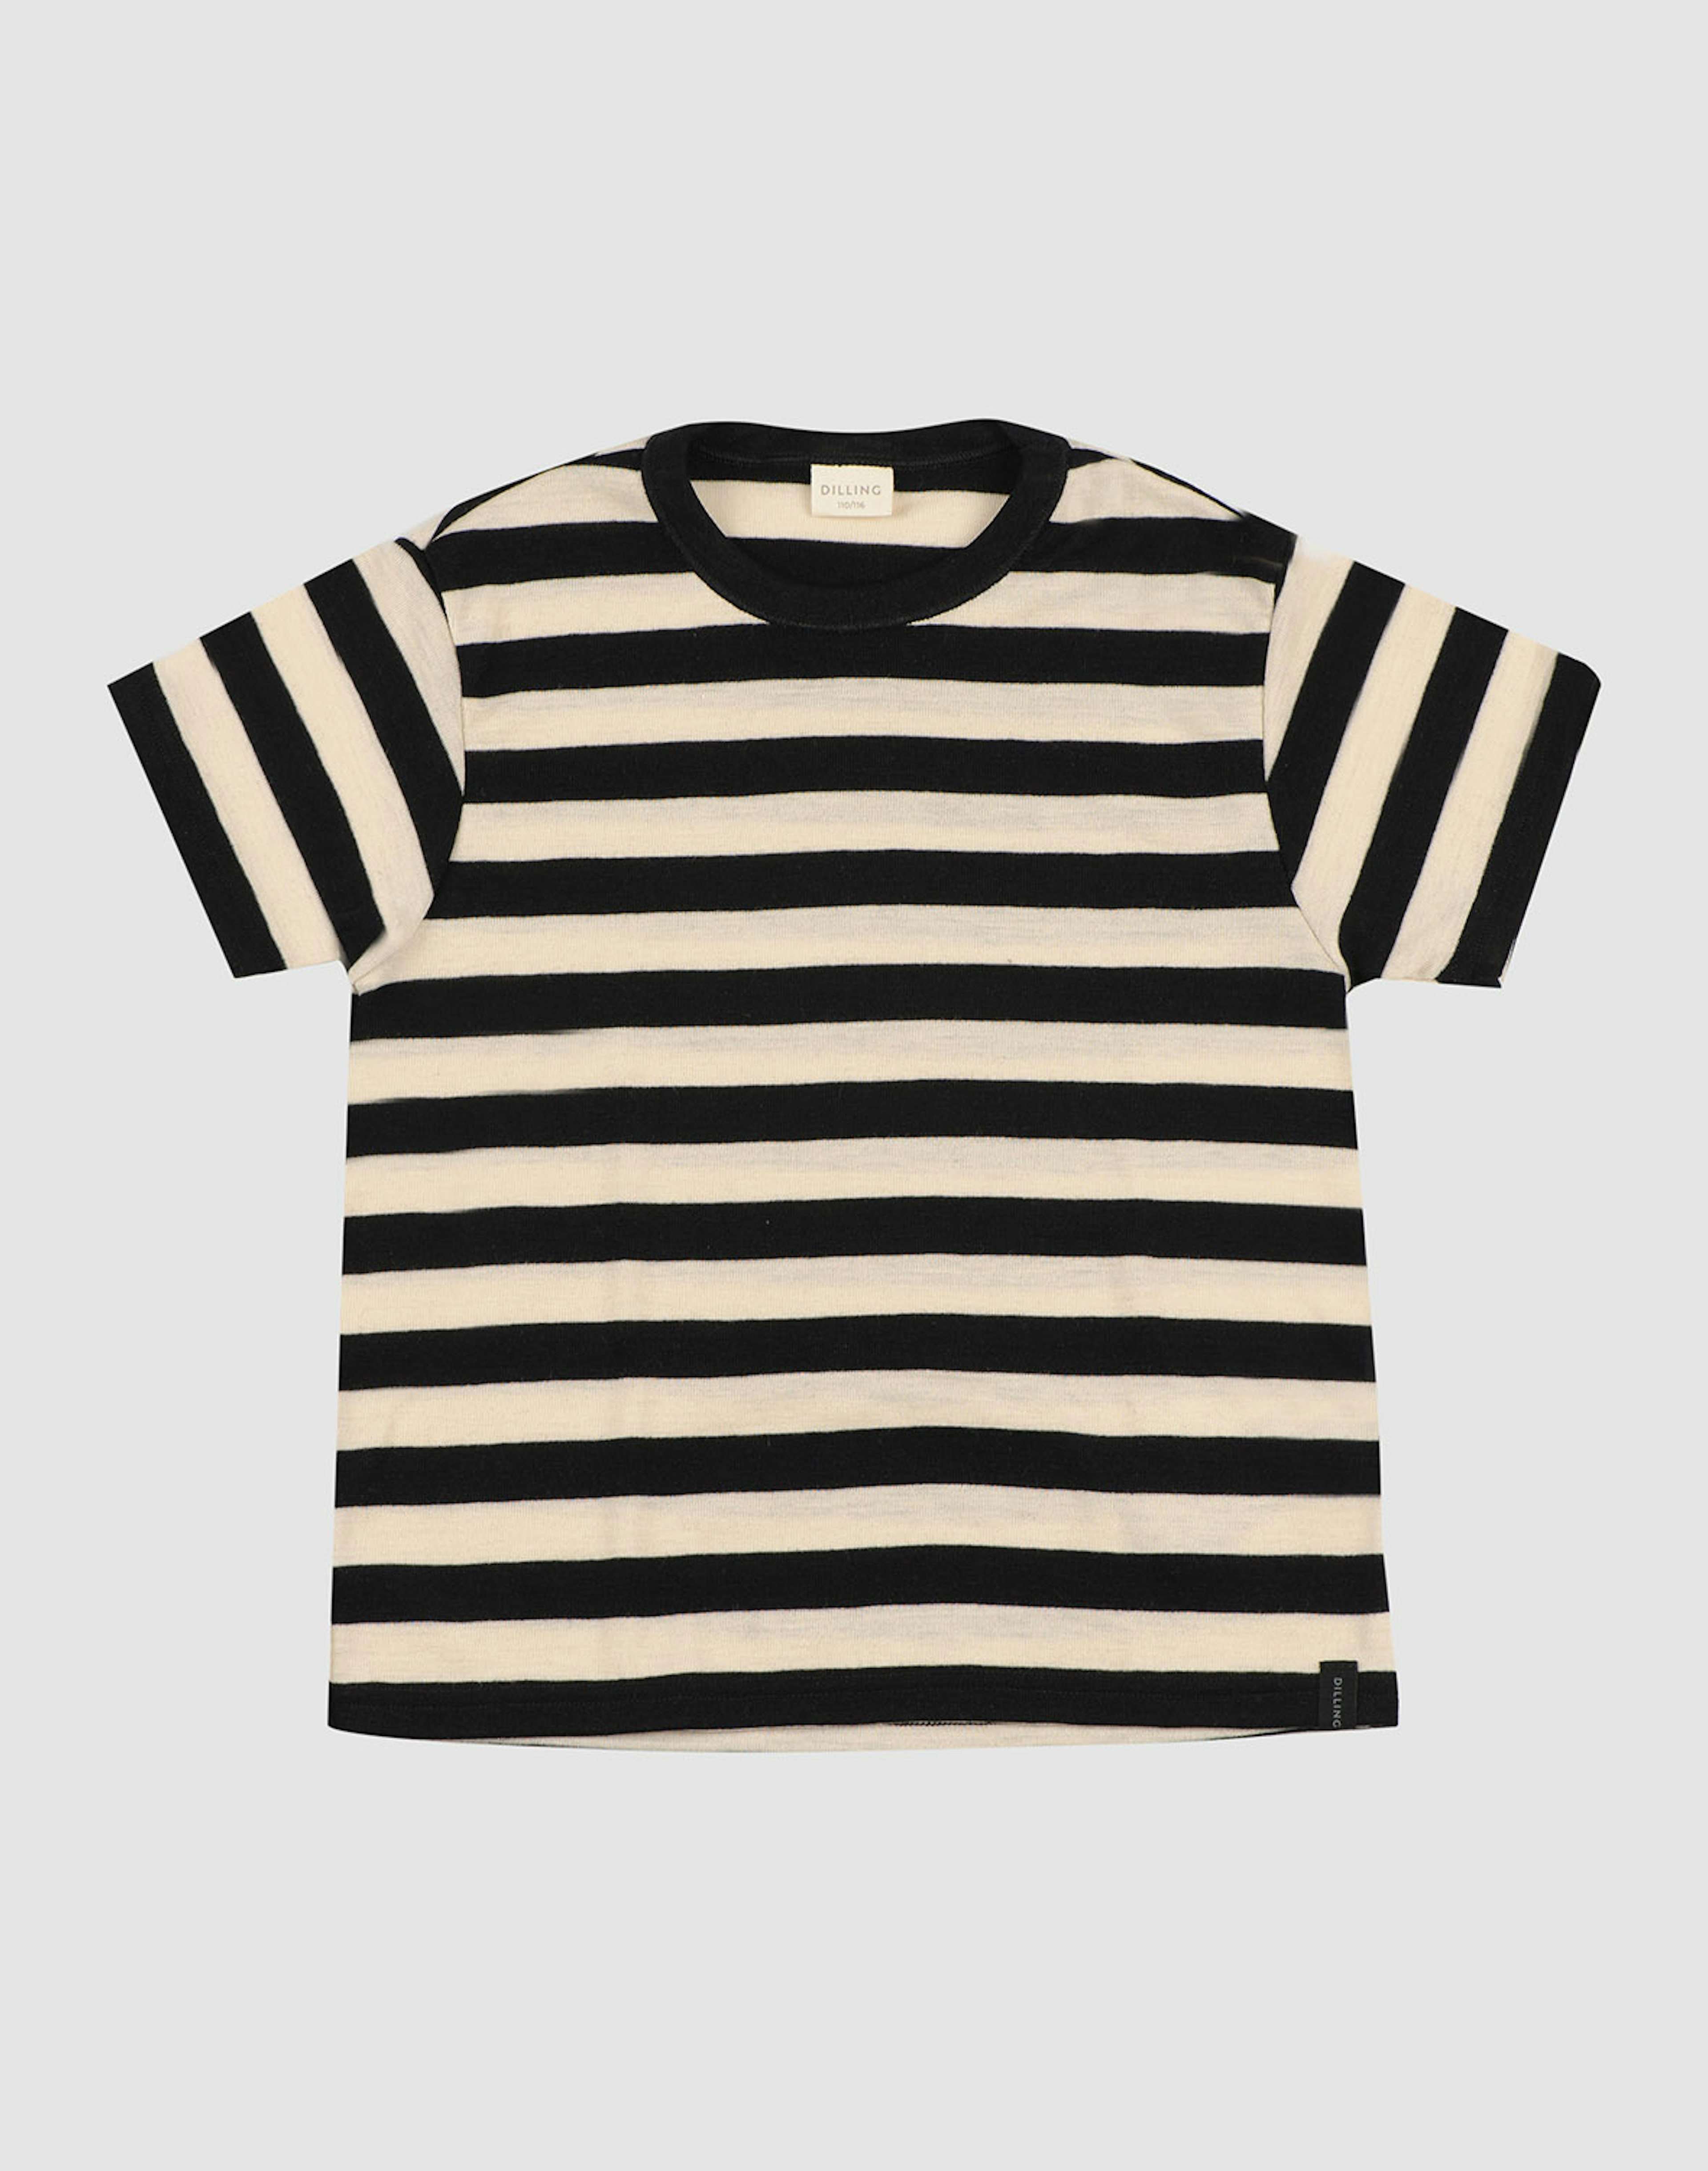 Children’s merino wool/silk T-shirt